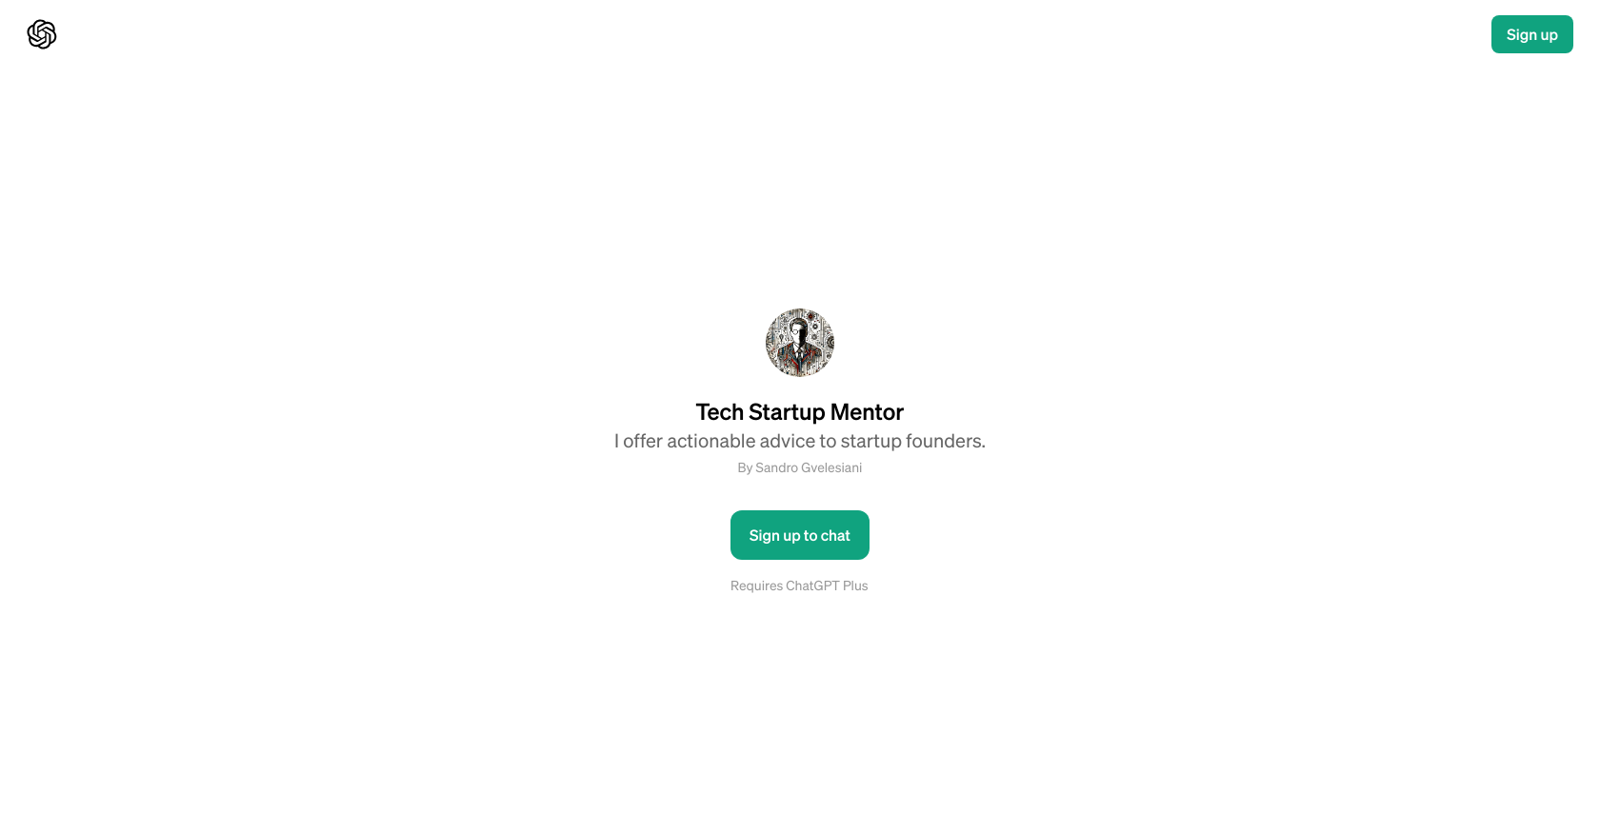 Tech Startup Mentor website